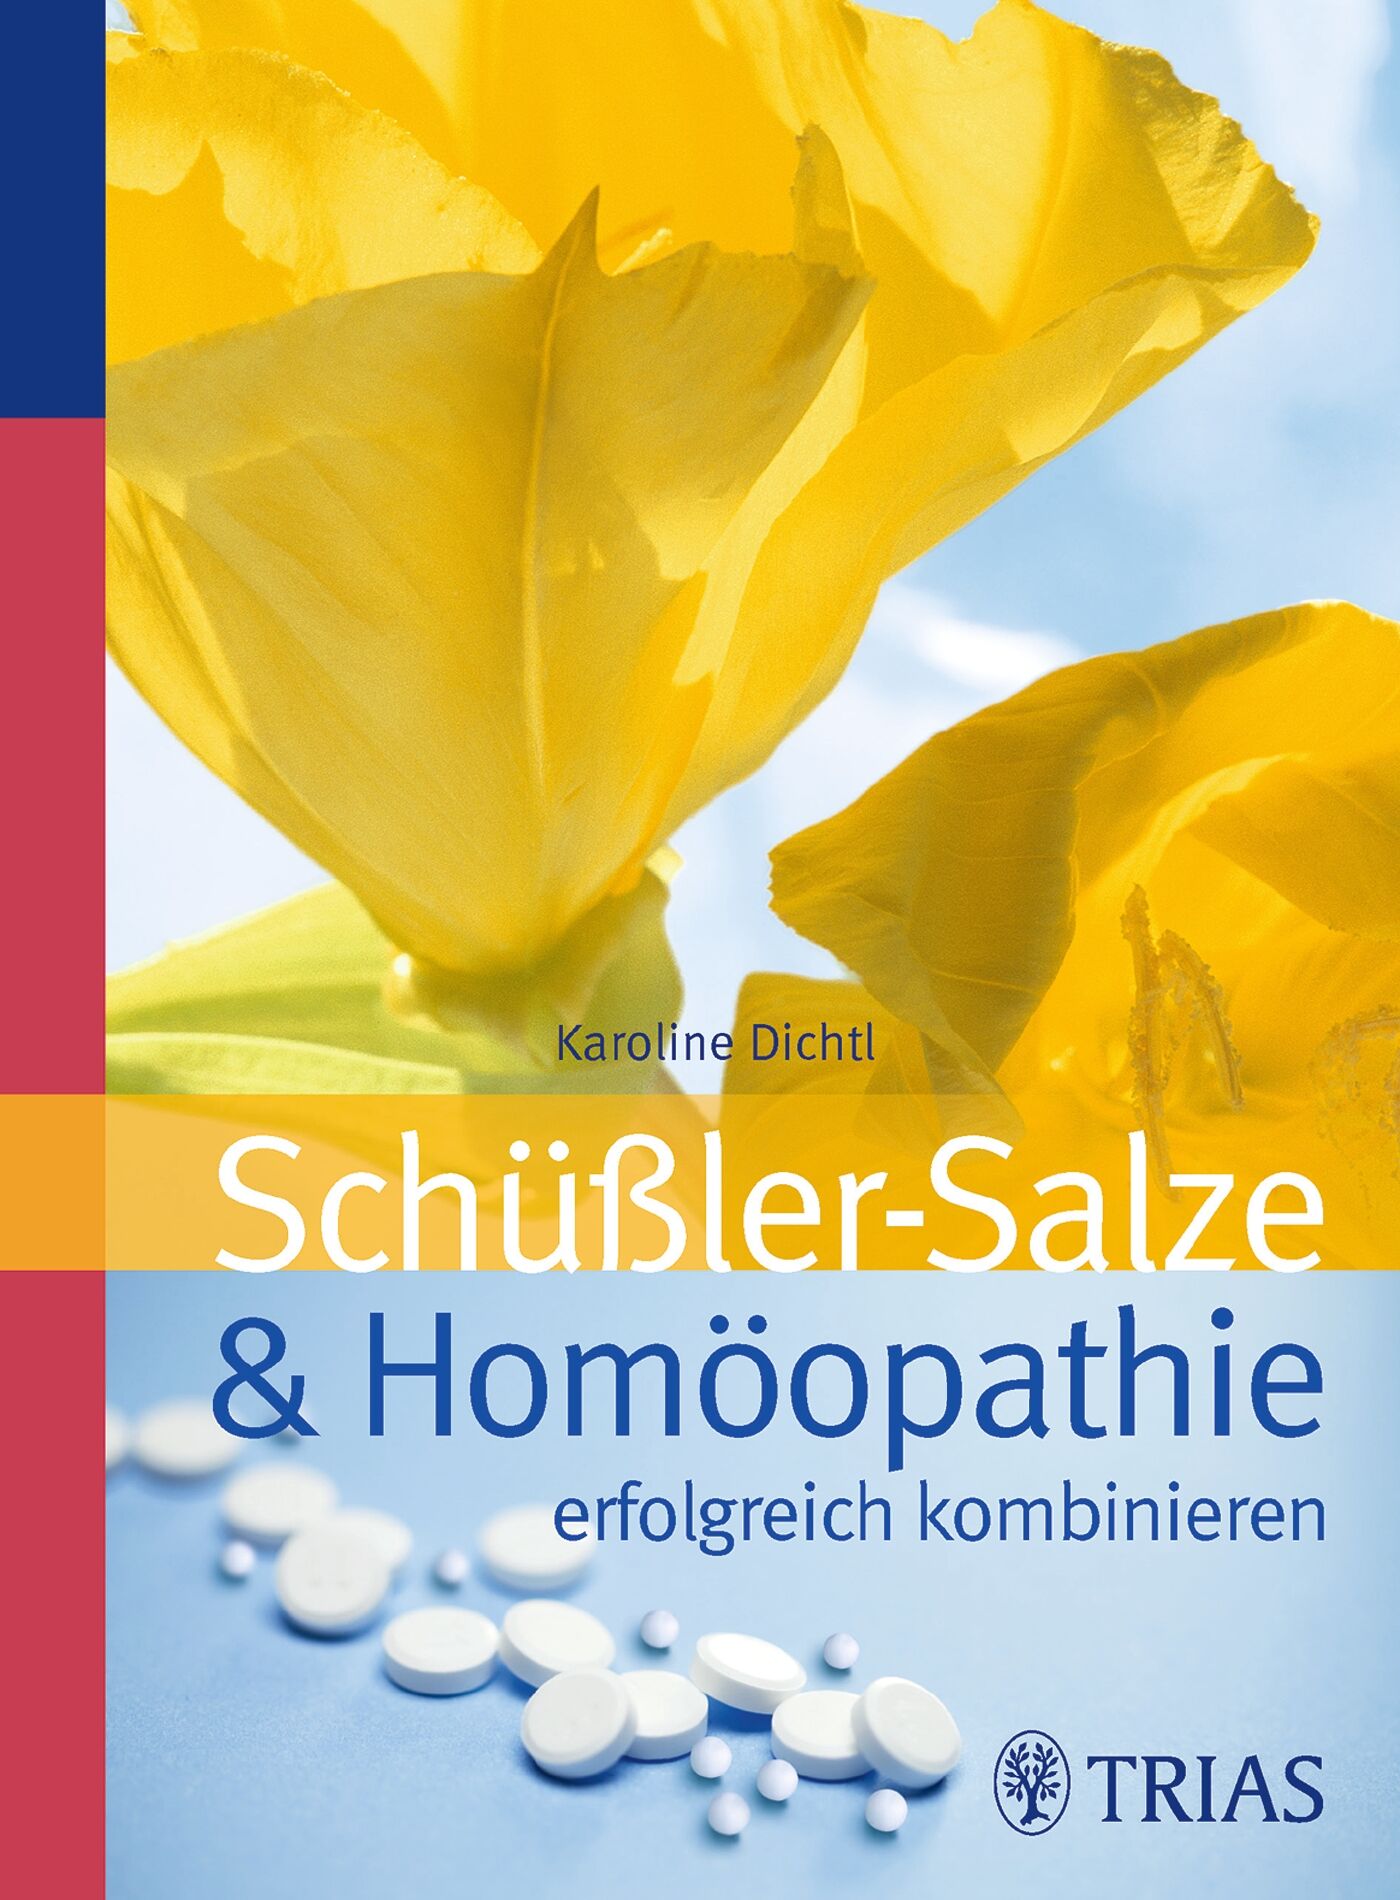 Schüssler-Salze und Homöopathie erfolgreich kombinieren, 9783830460930